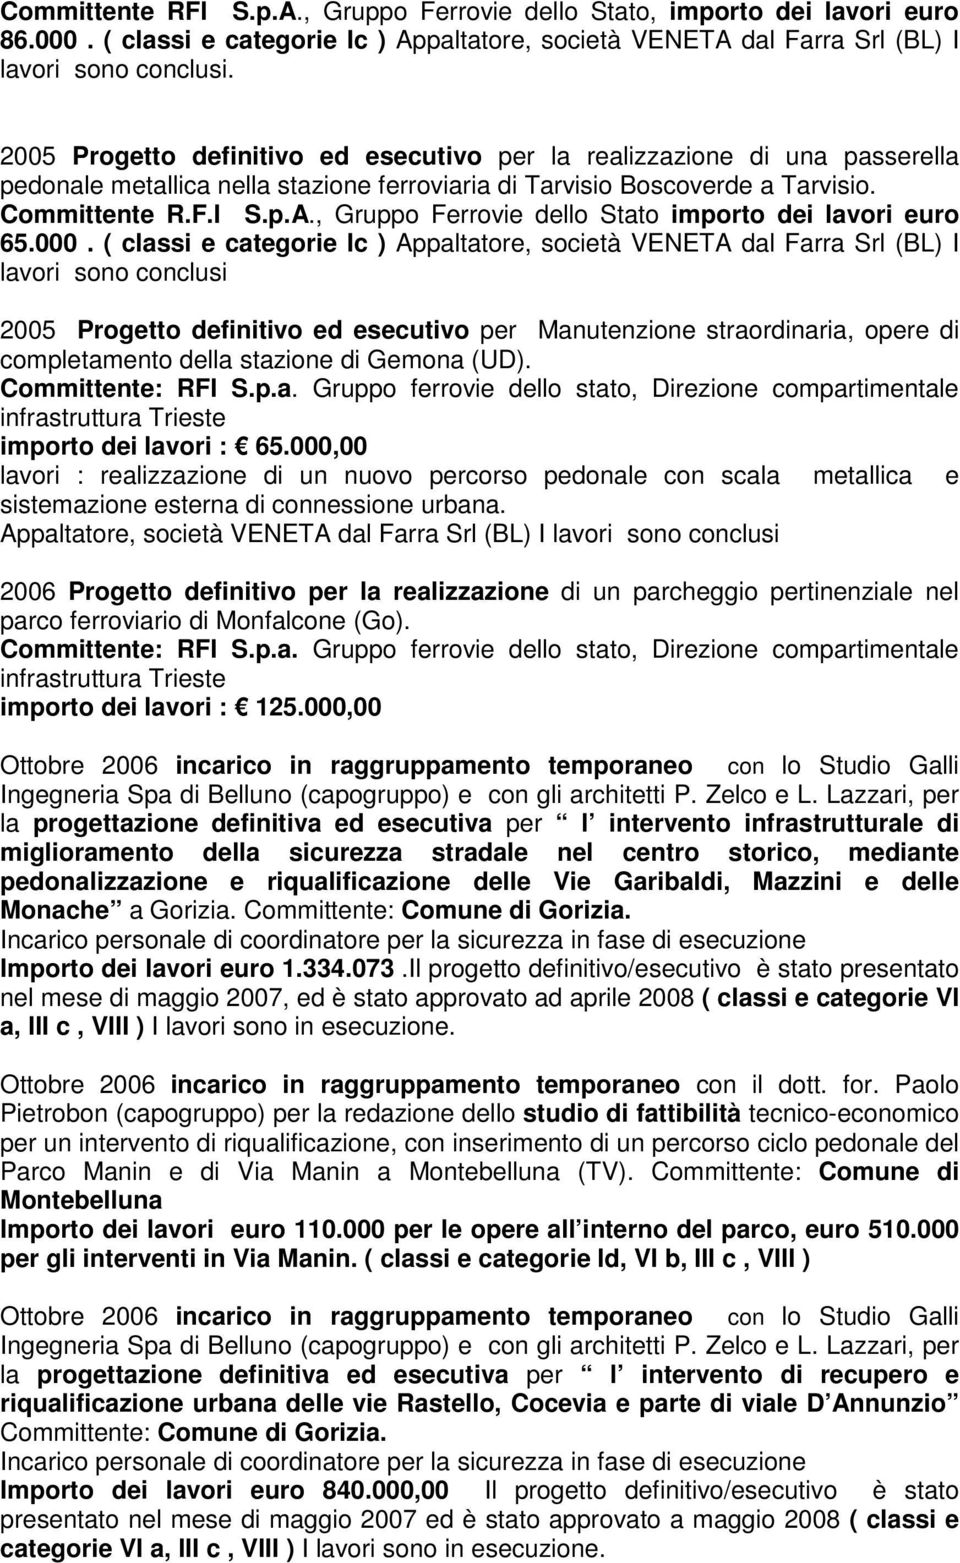 , Gruppo Ferrovie dello Stato importo dei lavori euro 65.000.